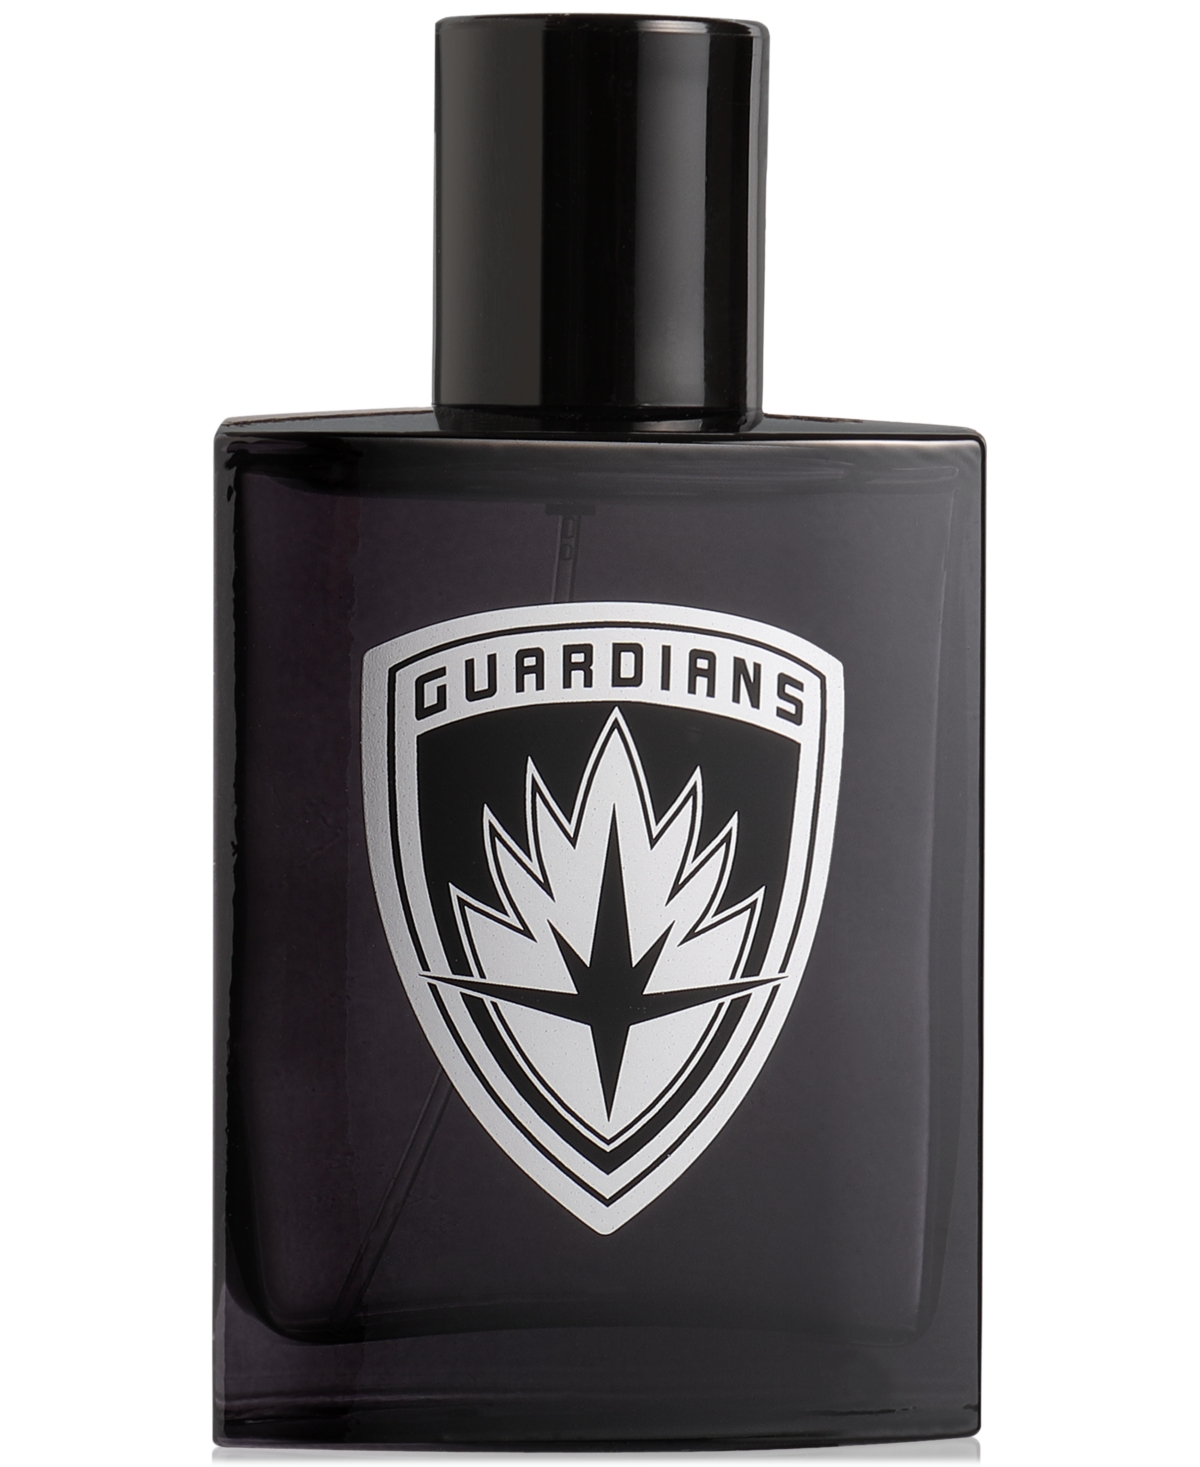 Guardians of the Galaxy Eau de Toilette Spray, 3.4 oz.